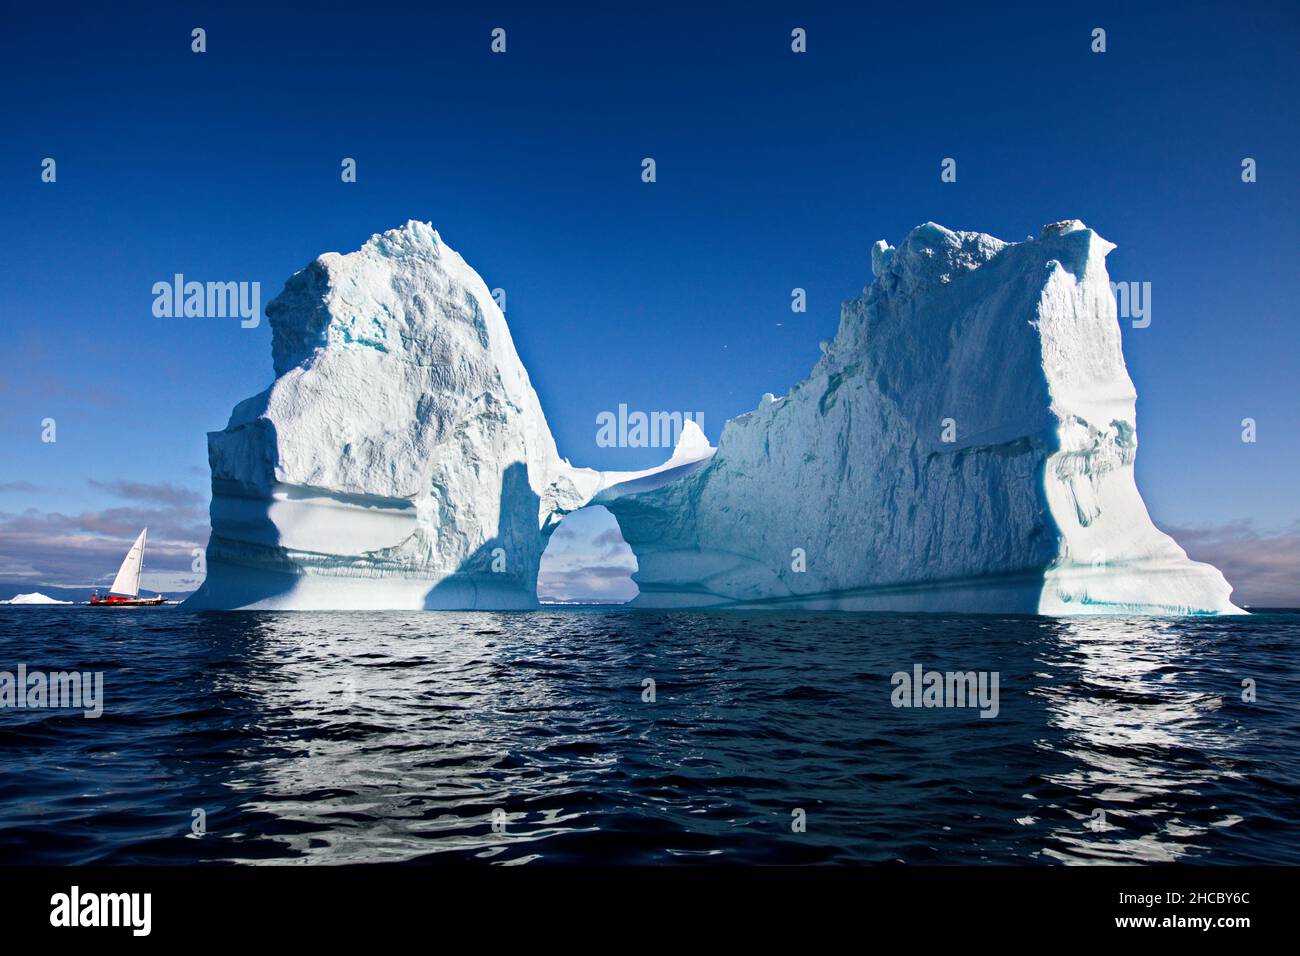 Bellissimo paesaggio con grandi iceberg in mezzo al mare in Groenlandia Foto Stock